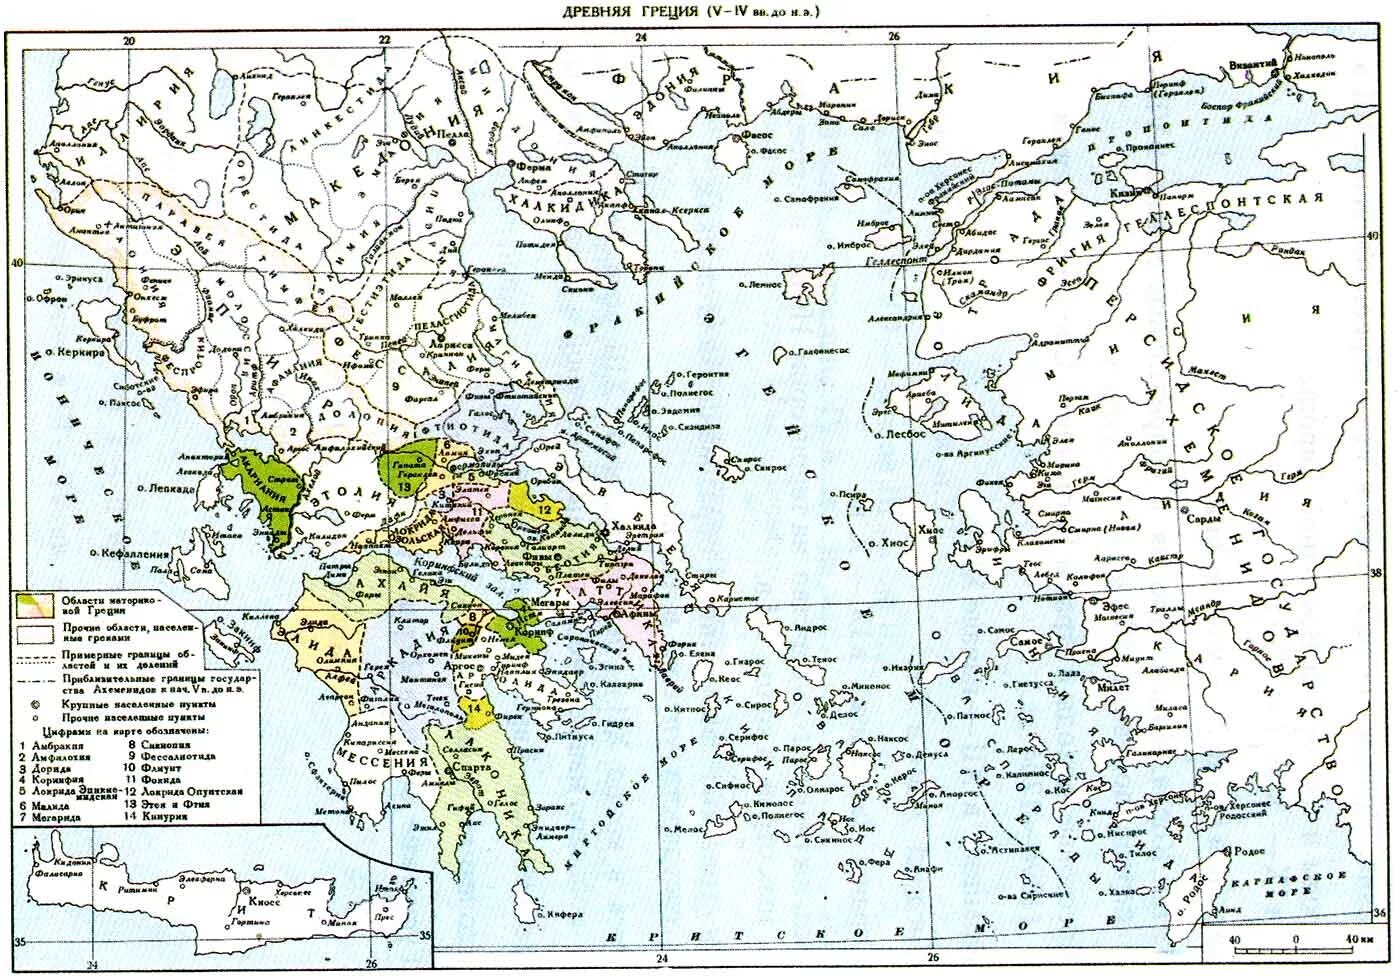 Показать на карте древнюю грецию. Карта древней Греции 5 век до н.э. Карта древней Греции 4 век до н э. Карта древней Греции античность. Древняя Греция на карте 4 век.